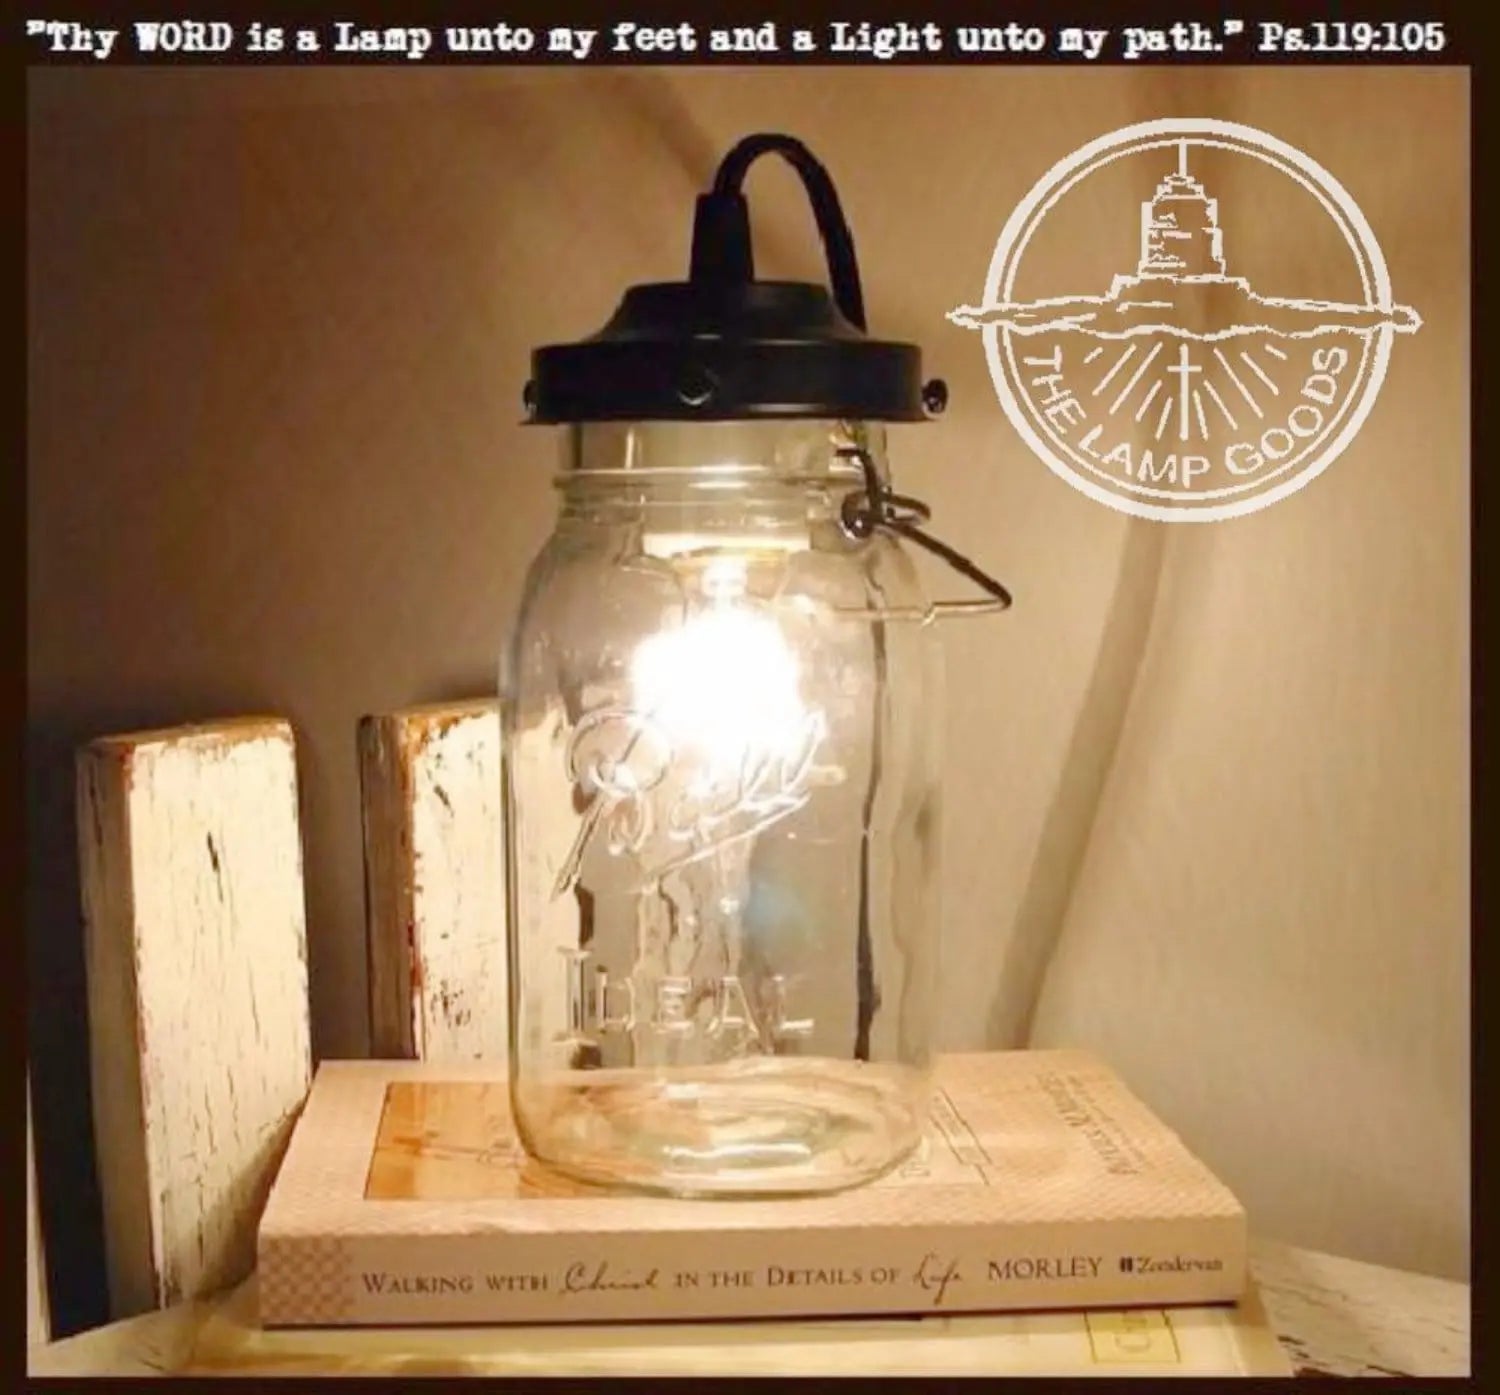 Mason Jar Lamp Table Vintage Quart Jar The Lamp Goods